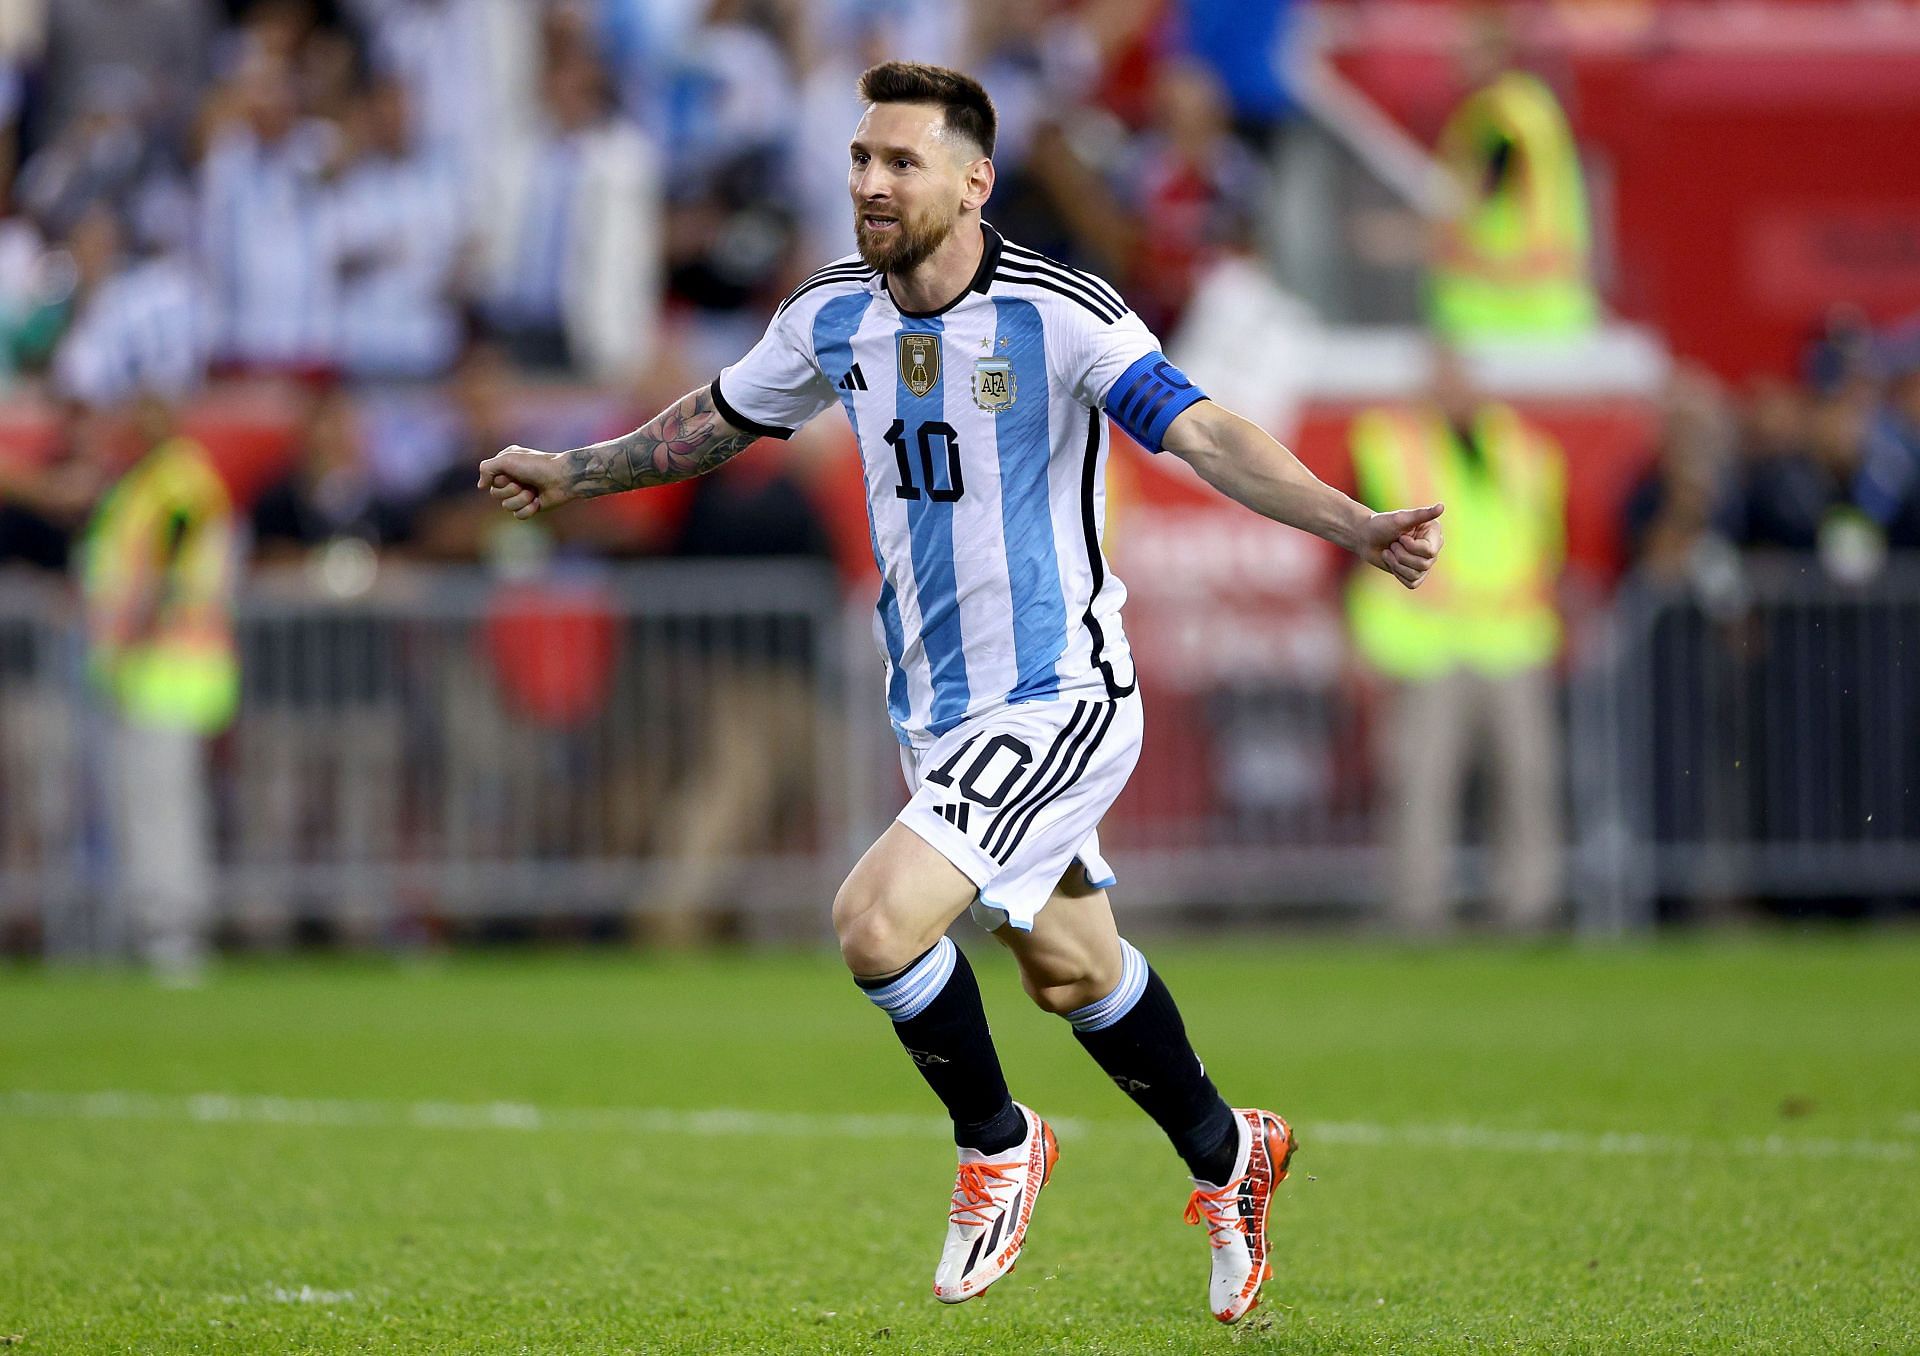 Lionel Messi celebrates after scoring against Jamaica